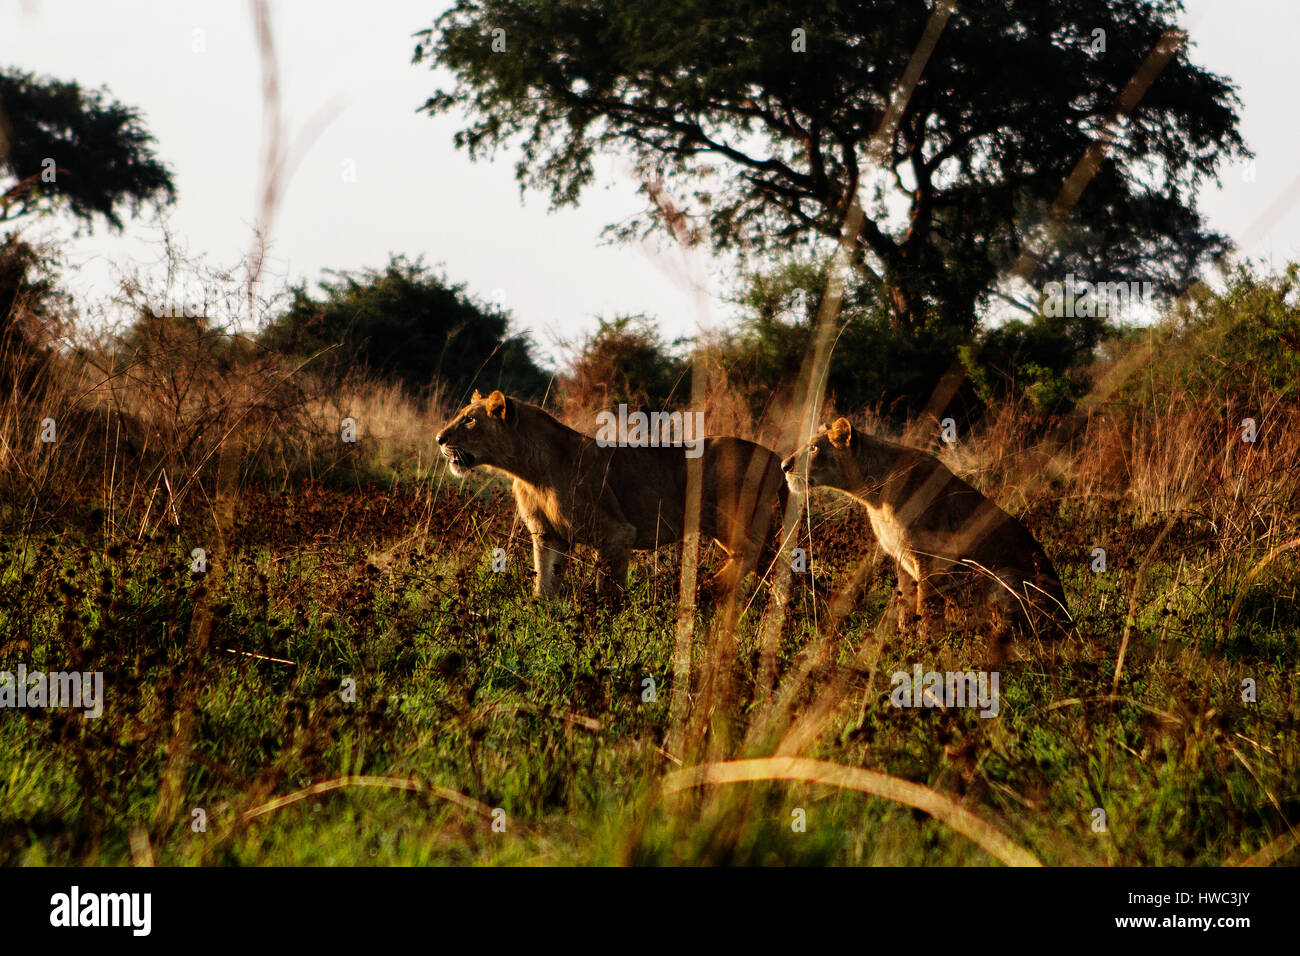 Zwei Löwen an der Murchison fällt nationalen Marke in Uganda, Afrika. Murchison Falls National Park ist bekannt für seine Tierwelt und es gibt vier der "big Five". Der Nationalpark befindet sich im Nordwesten Ugandas und von Uganda Wildlife Authority verwaltet wird. Der Wildbestand haben sich weitgehend erholt von der Wilderei unter Idi Amin. Stockfoto